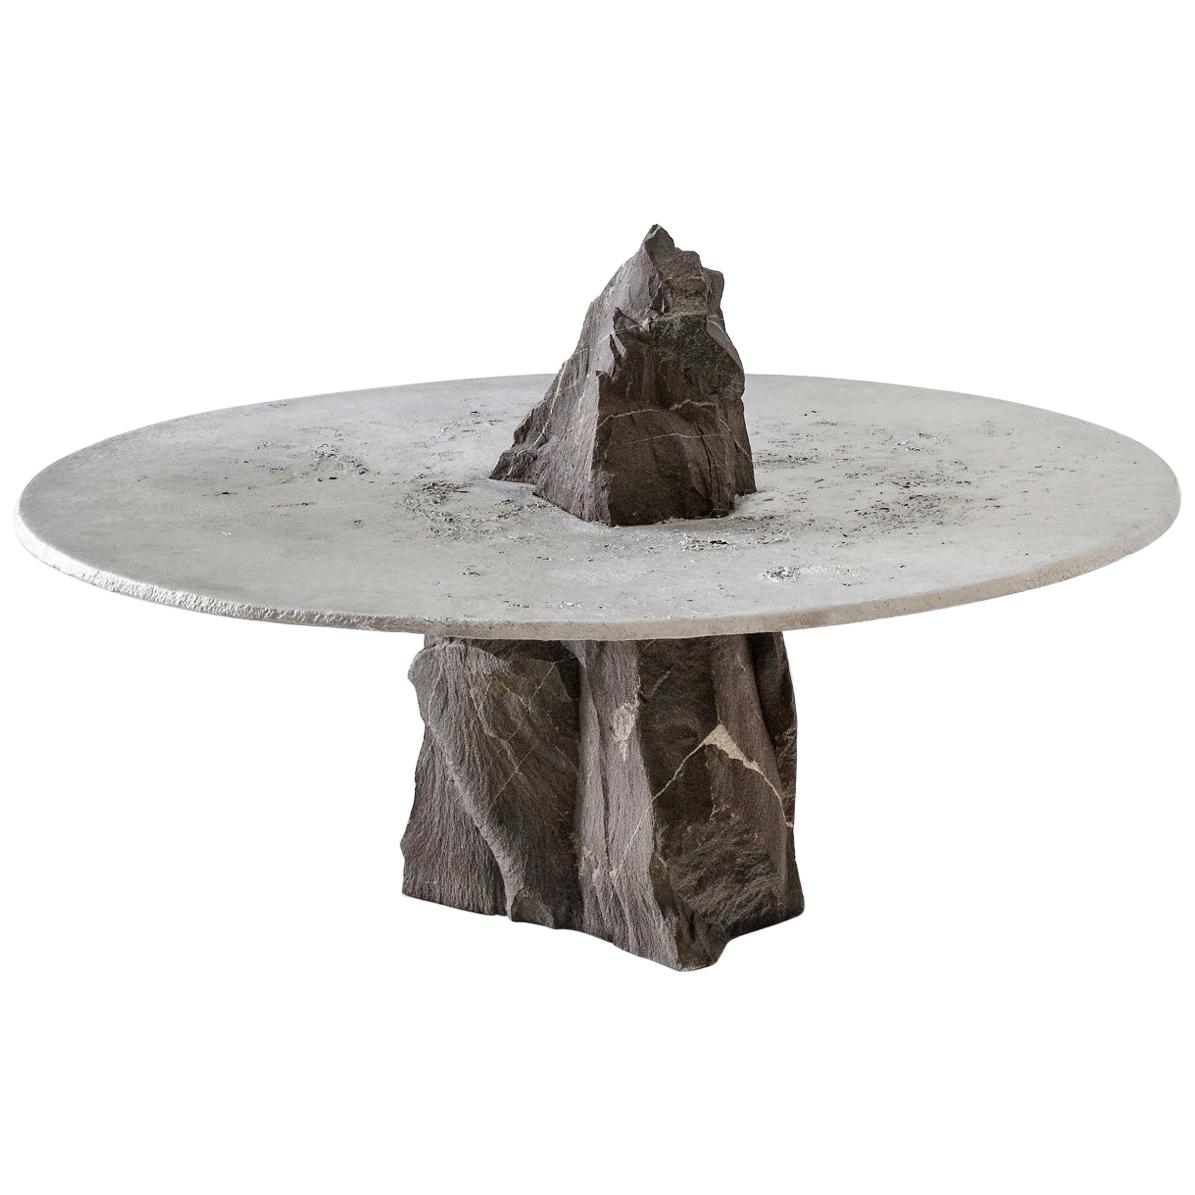 Jesse Ede, "Lunar", Aluminium and Slate Stone Coffee Table